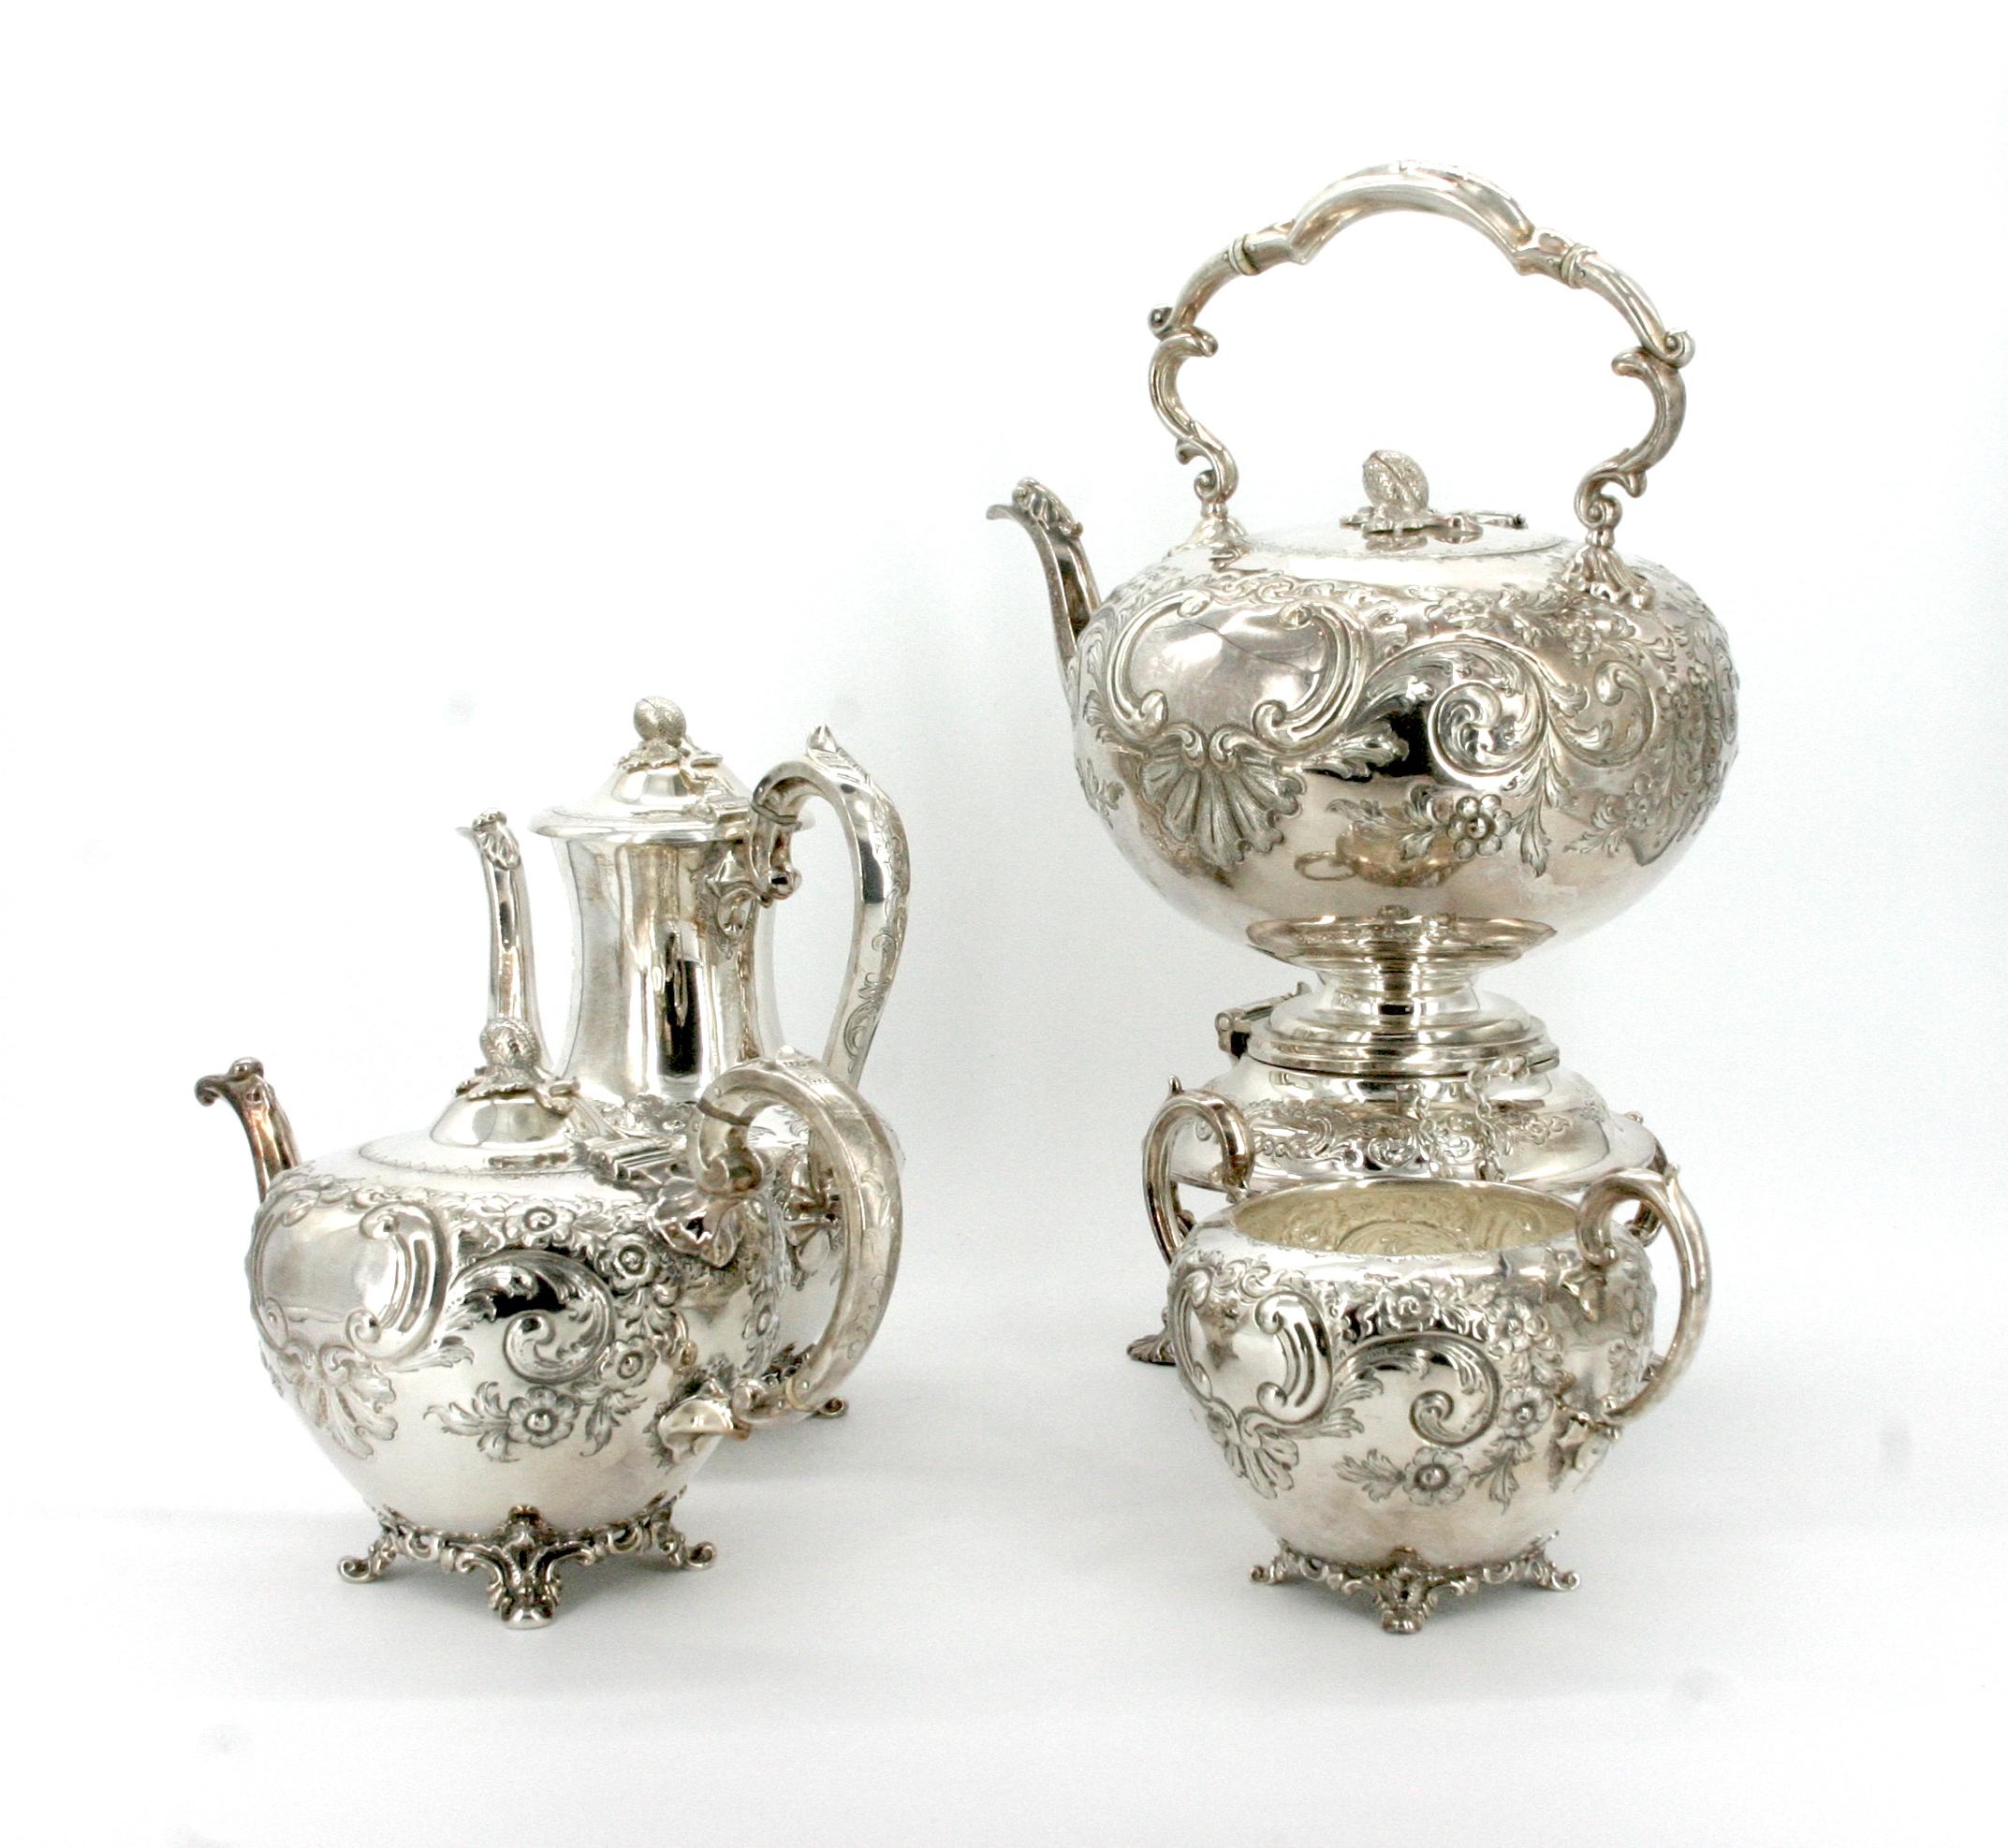 Englisches Sheffield-Silbergeschirr aus dem frühen 19. Jahrhundert, fünfteiliges Tee-/Kaffeeservice. Die Kaffee-/Teekanne weist außen komplizierte Blumendetails und eine Tatze auf. Das Set enthält einen großen Wasserkessel 16